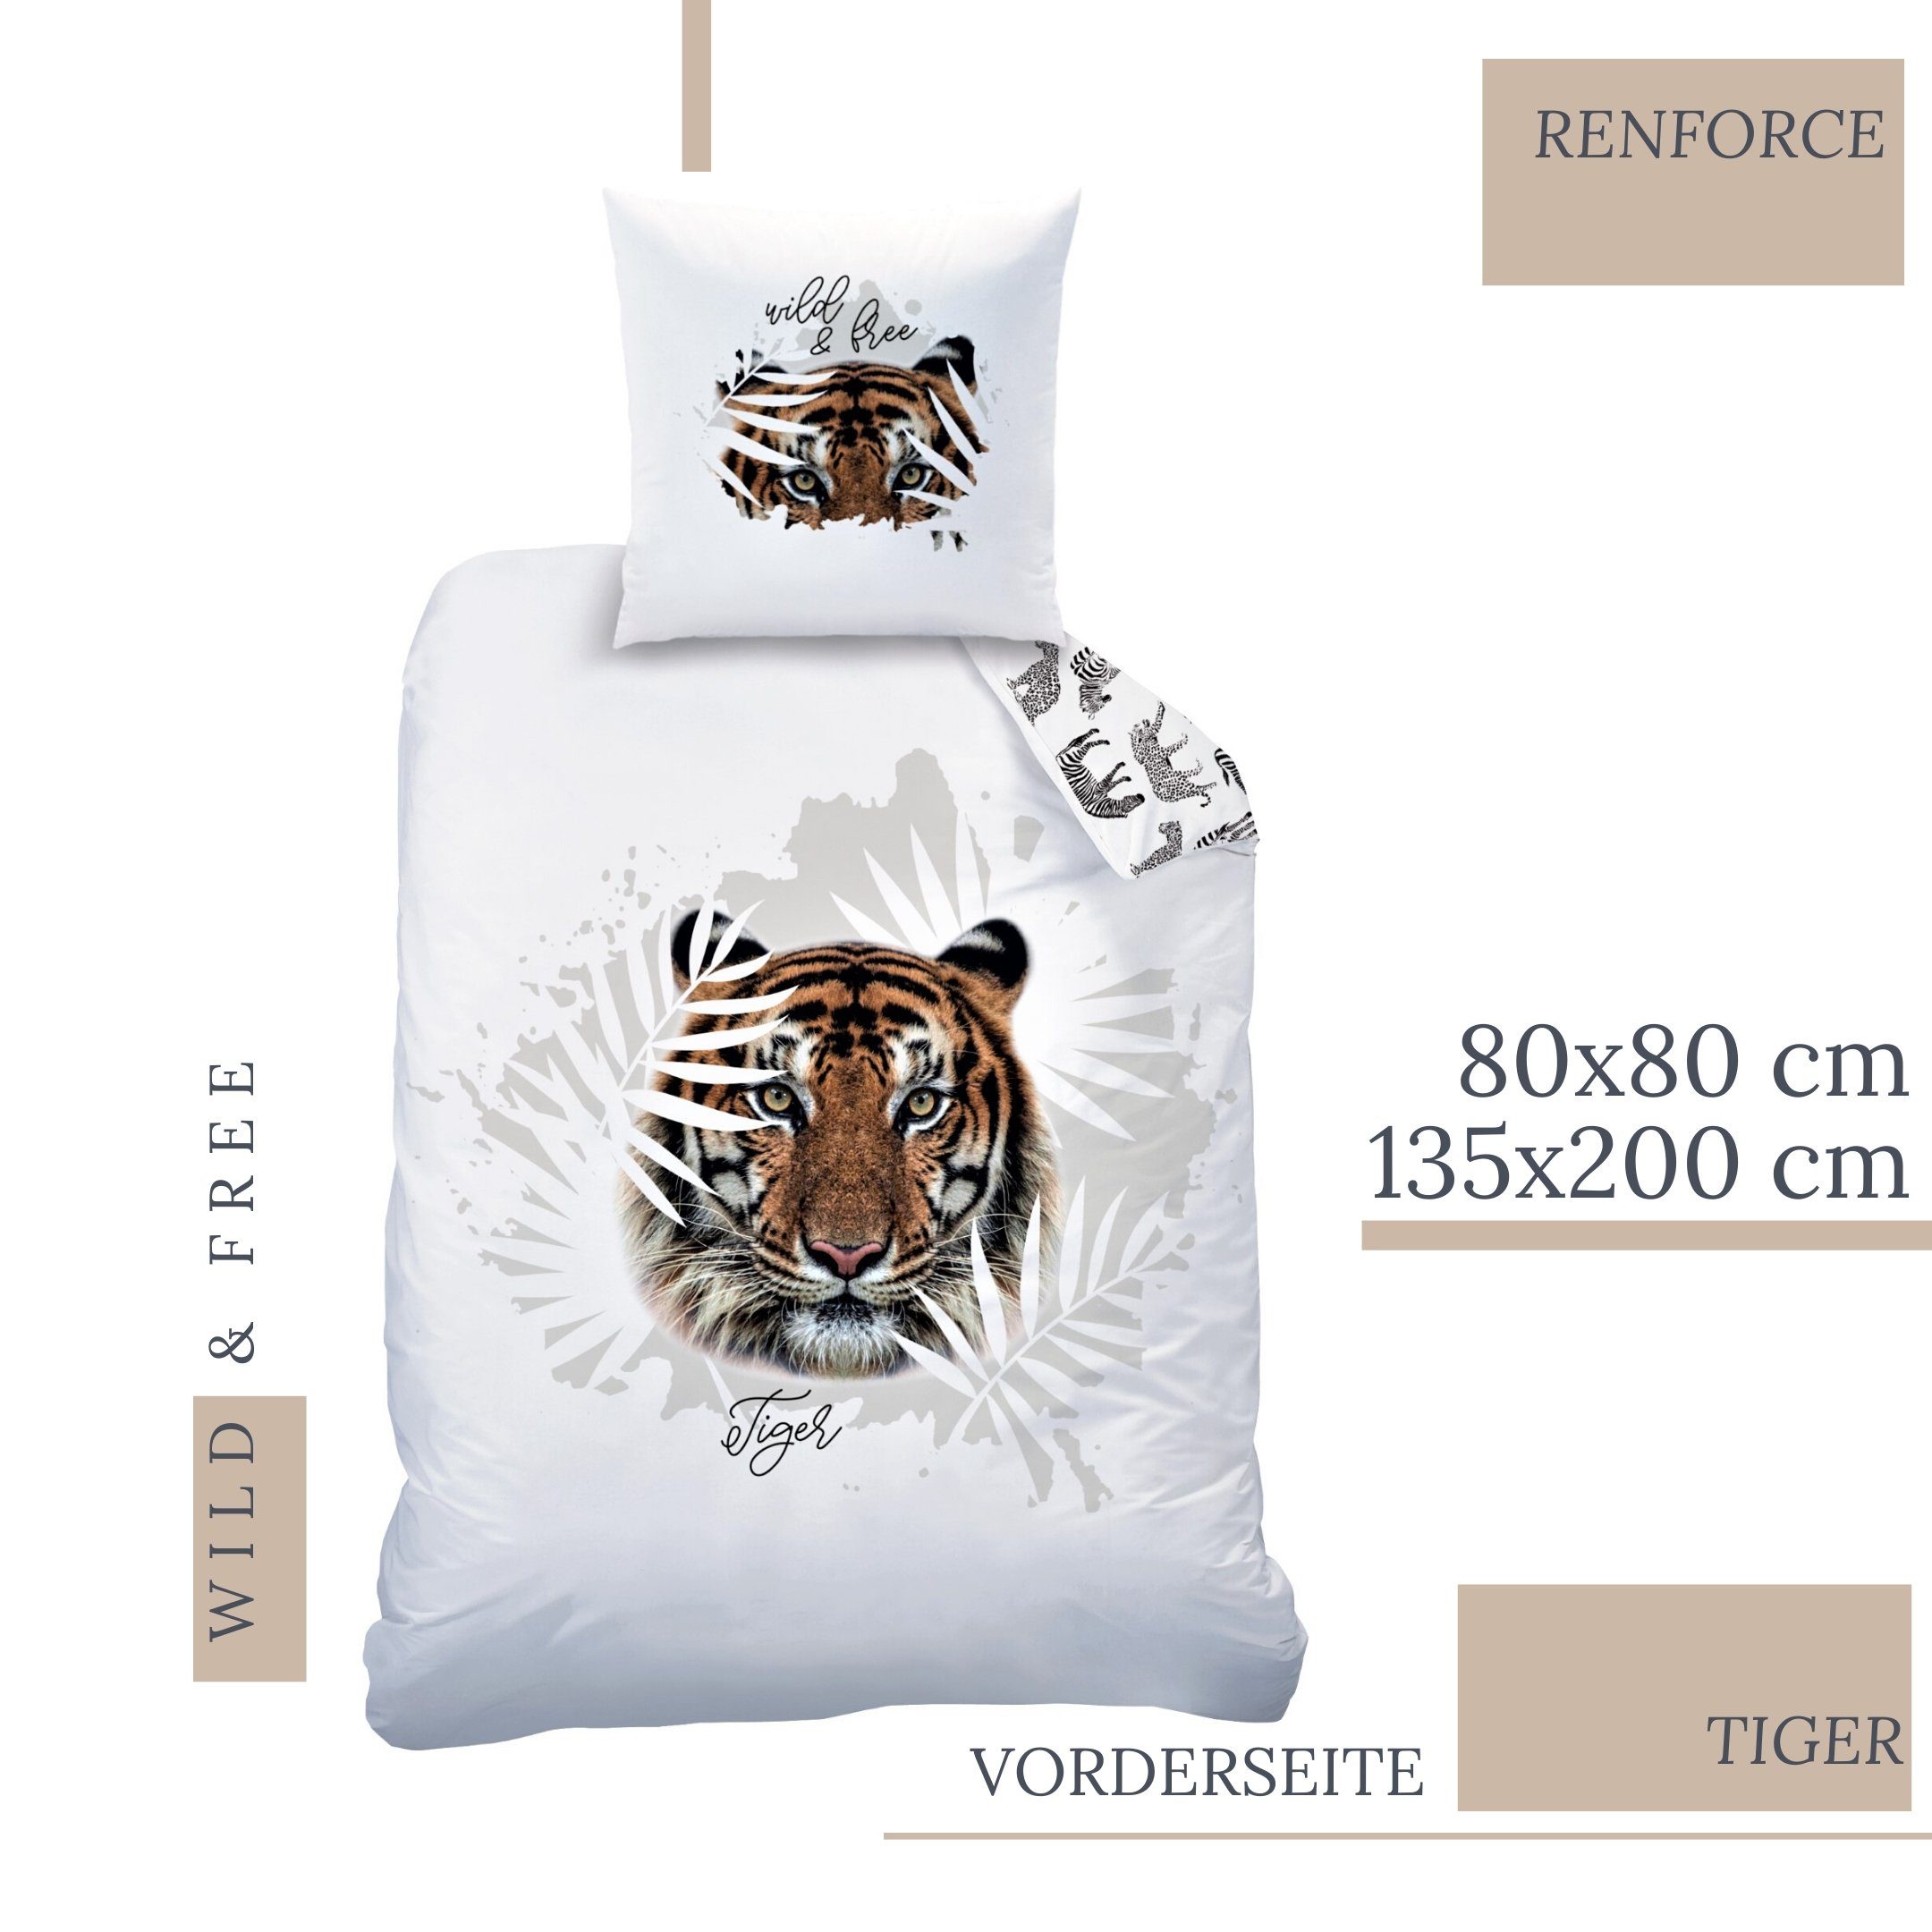 Bettwäsche »Tiger Bettwäsche 135x200 + 80x80 cm 2 tlg., 100 % Baumwolle in  Renforcé, Wild & Free Safari Bettwäsche-Set für Kinder, Teenager &  Erwachsene«, MTOnlinehandel online kaufen | OTTO